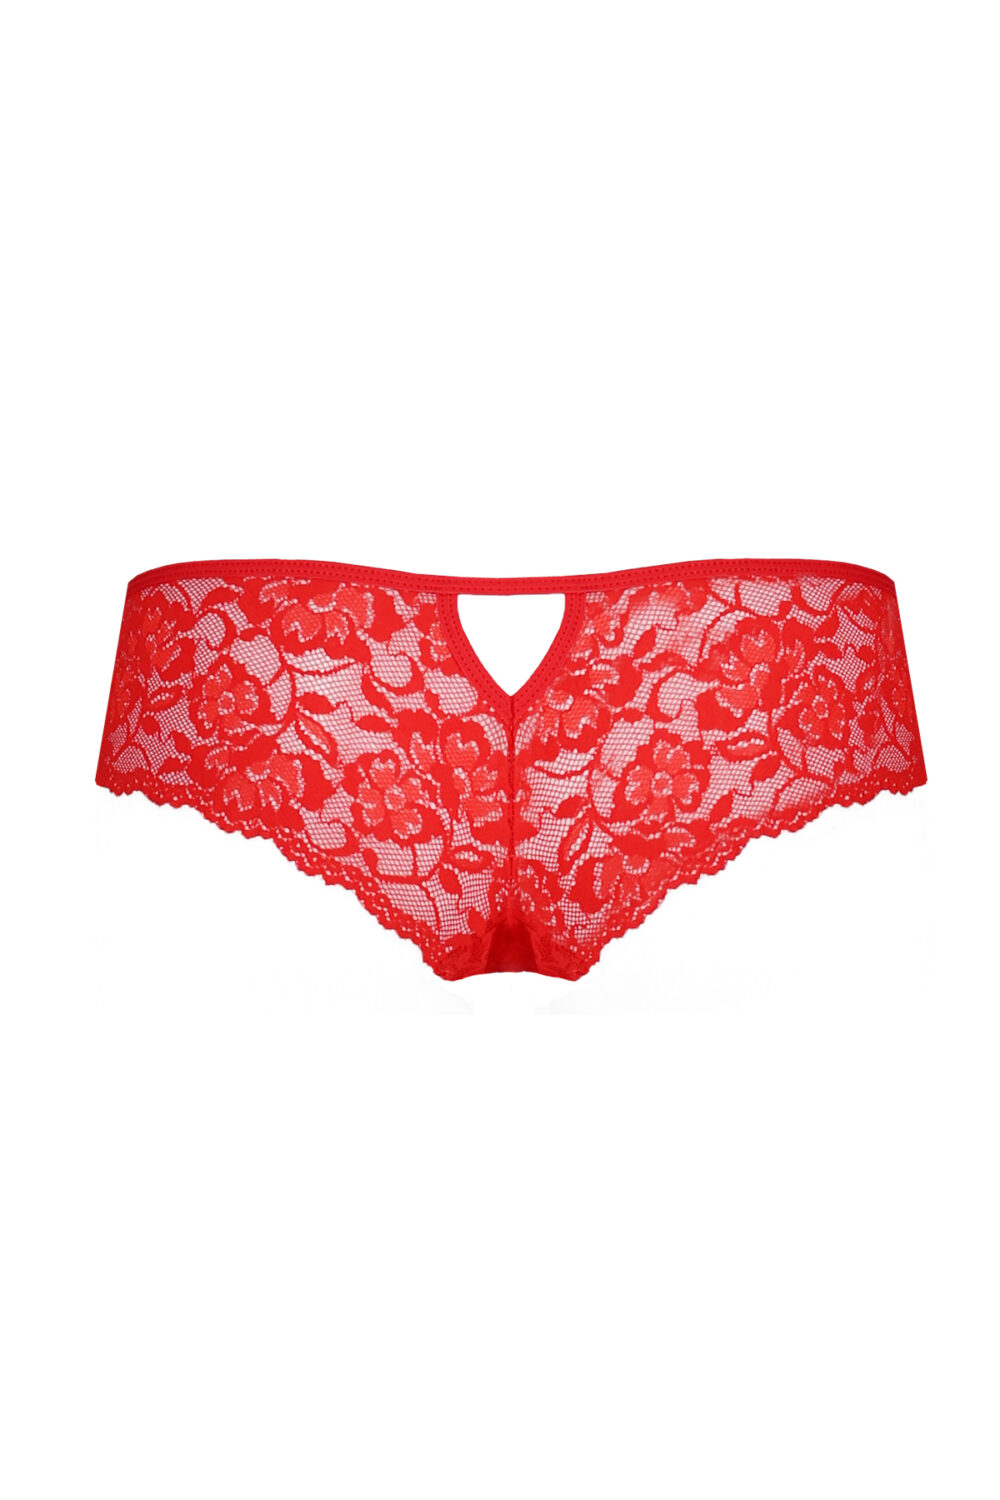 Raja Passion Red Lace Tanga Panties For Women Le Bar à Nylon